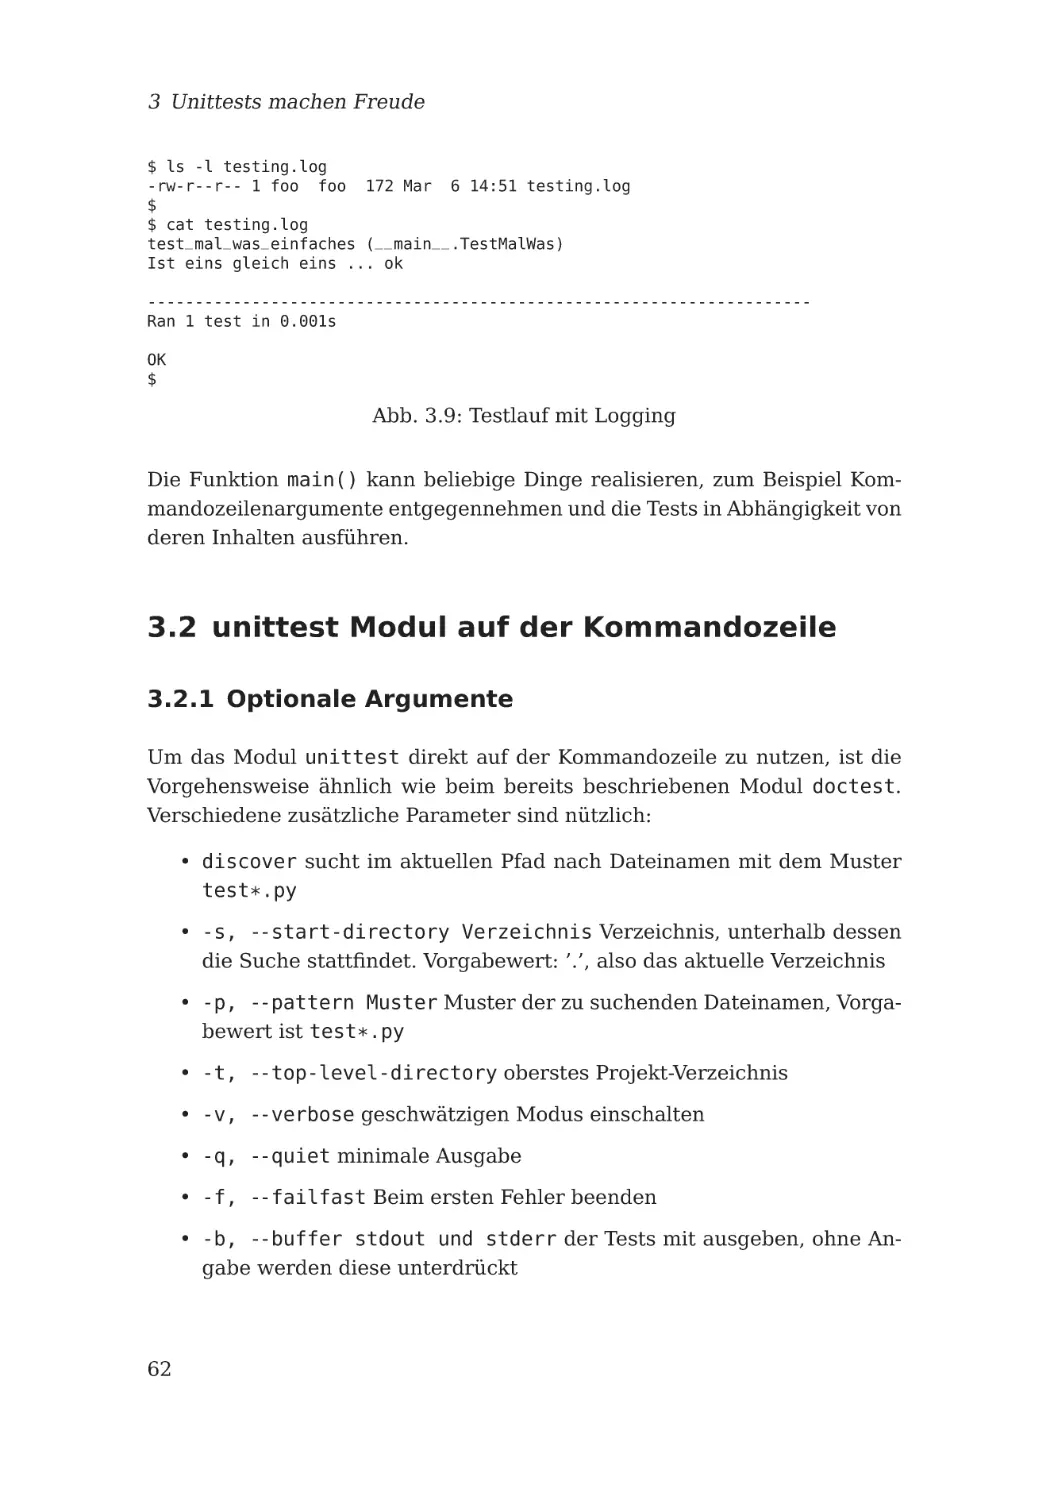 3.2 unittest Modul auf der Kommandozeile
3.2.1 Optionale Argumente